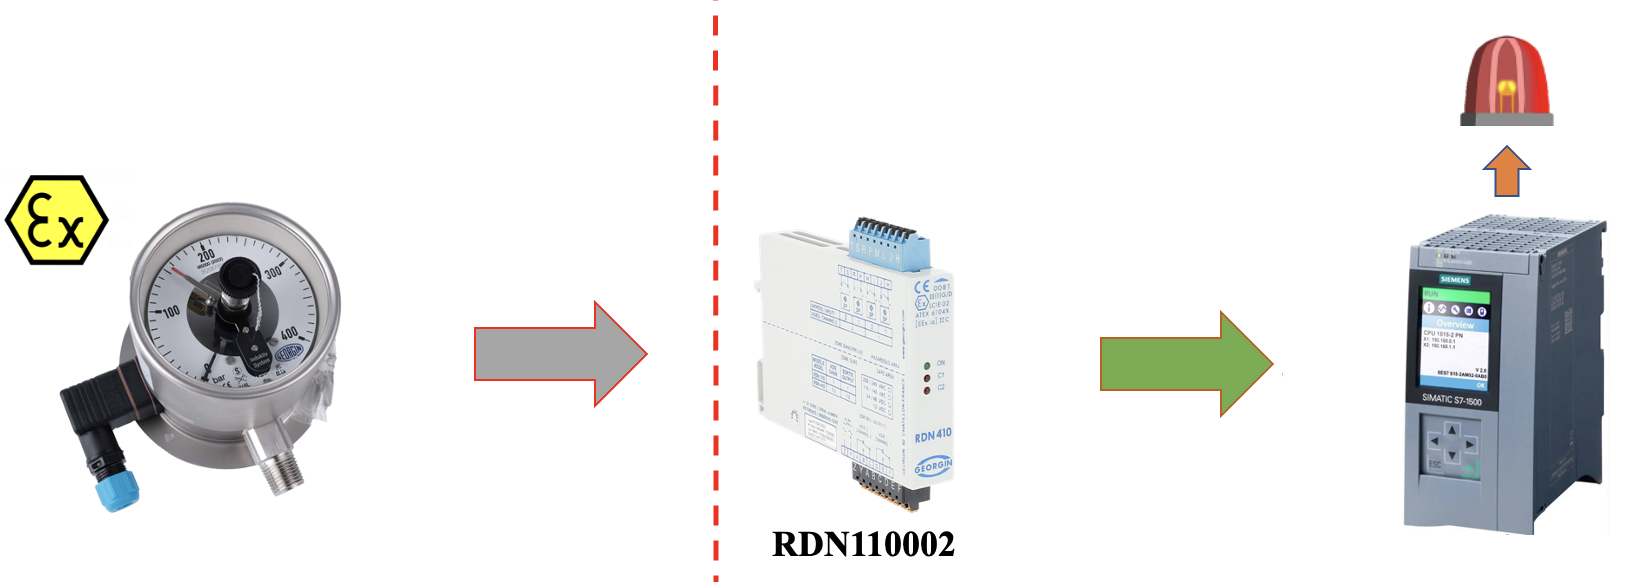 Cách kết nối đồng hồ áp suất phòng nổ với bộ khuếch đại relay